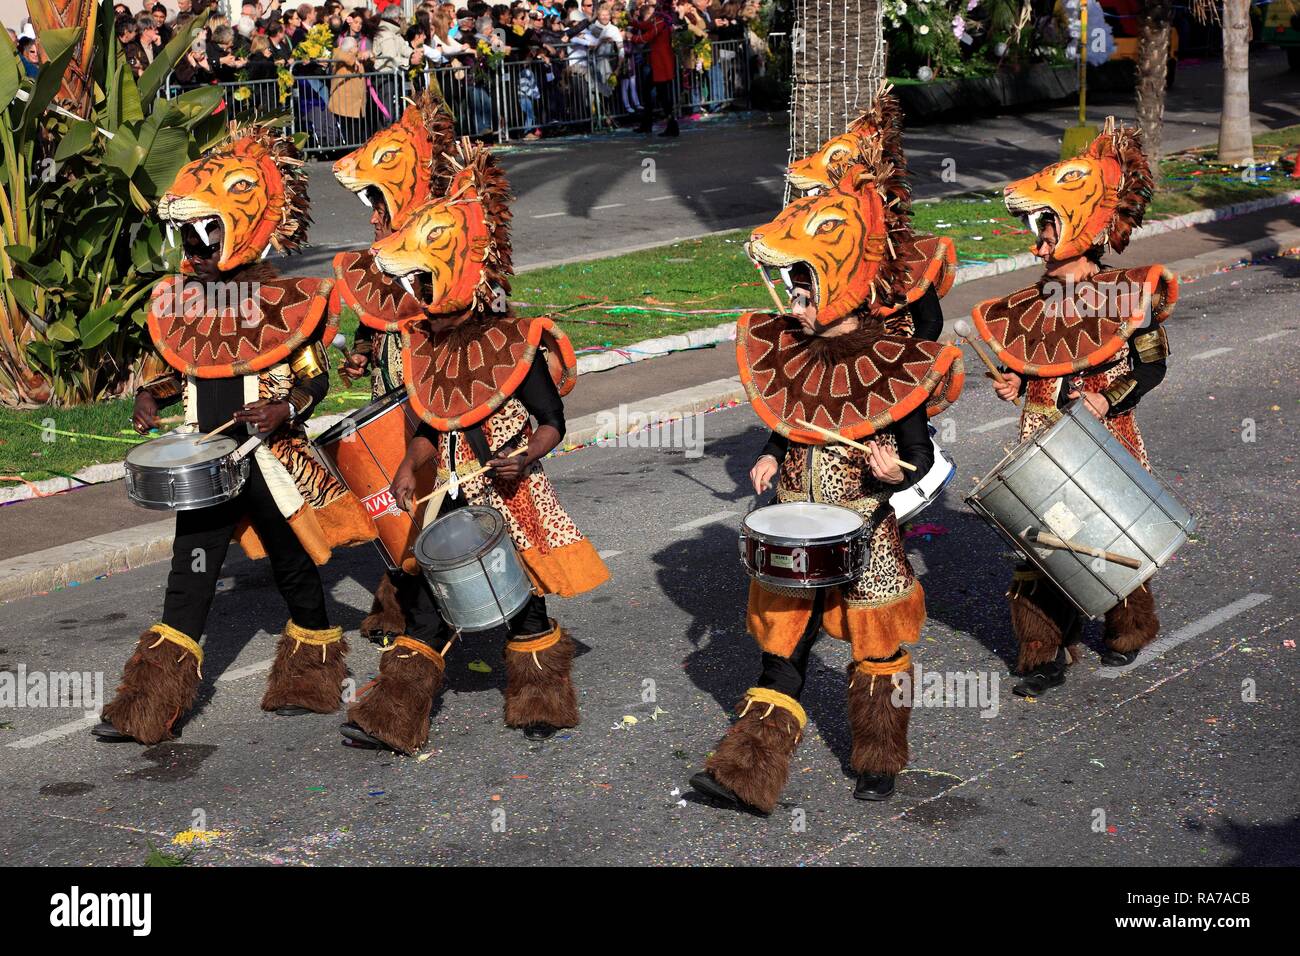 Animal fantasy Kostüme durch eine Musik Gruppe getragen während der blumenkorso Straße Prozession, Nizza, Südfrankreich, Frankreich, Europa Stockfoto